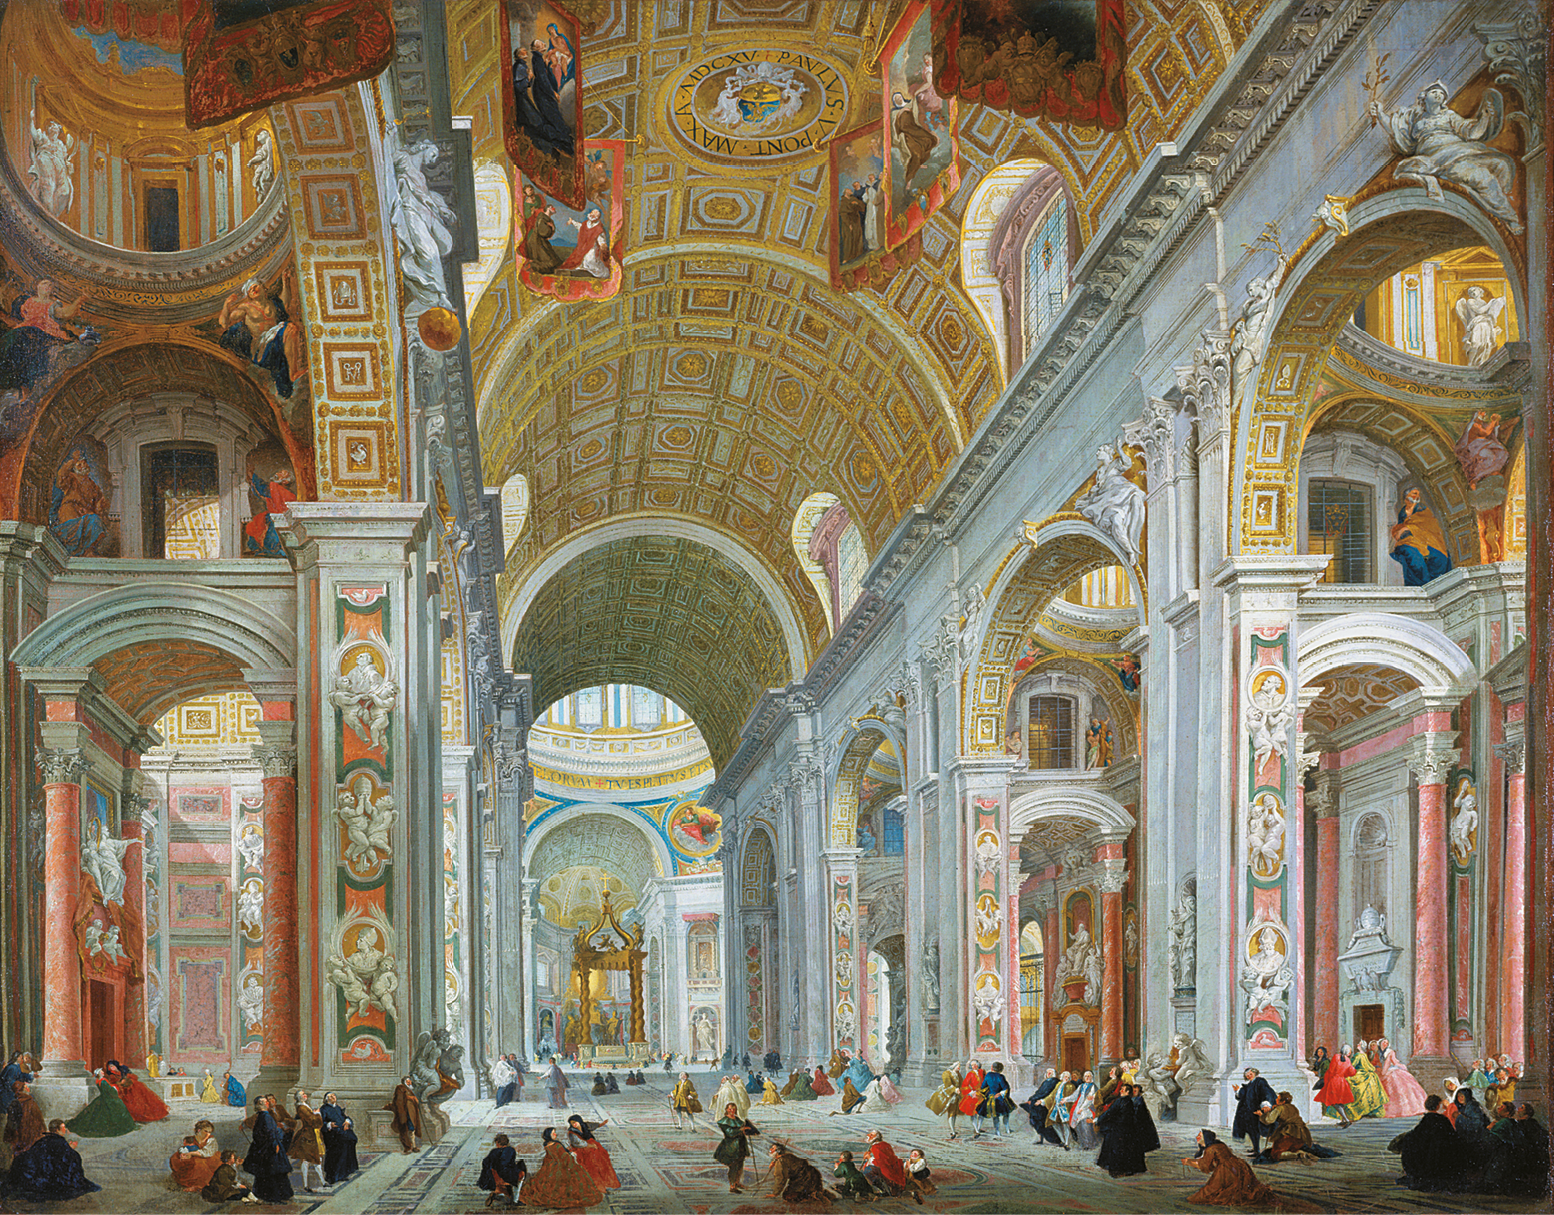 Pintura. Vista interna de Basílica, composta por paredes em arcos, com pinturas e detalhes em relevos nas paredes e o teto com detalhes dourados.  Há diversas pessoas andando dentro da basílica.